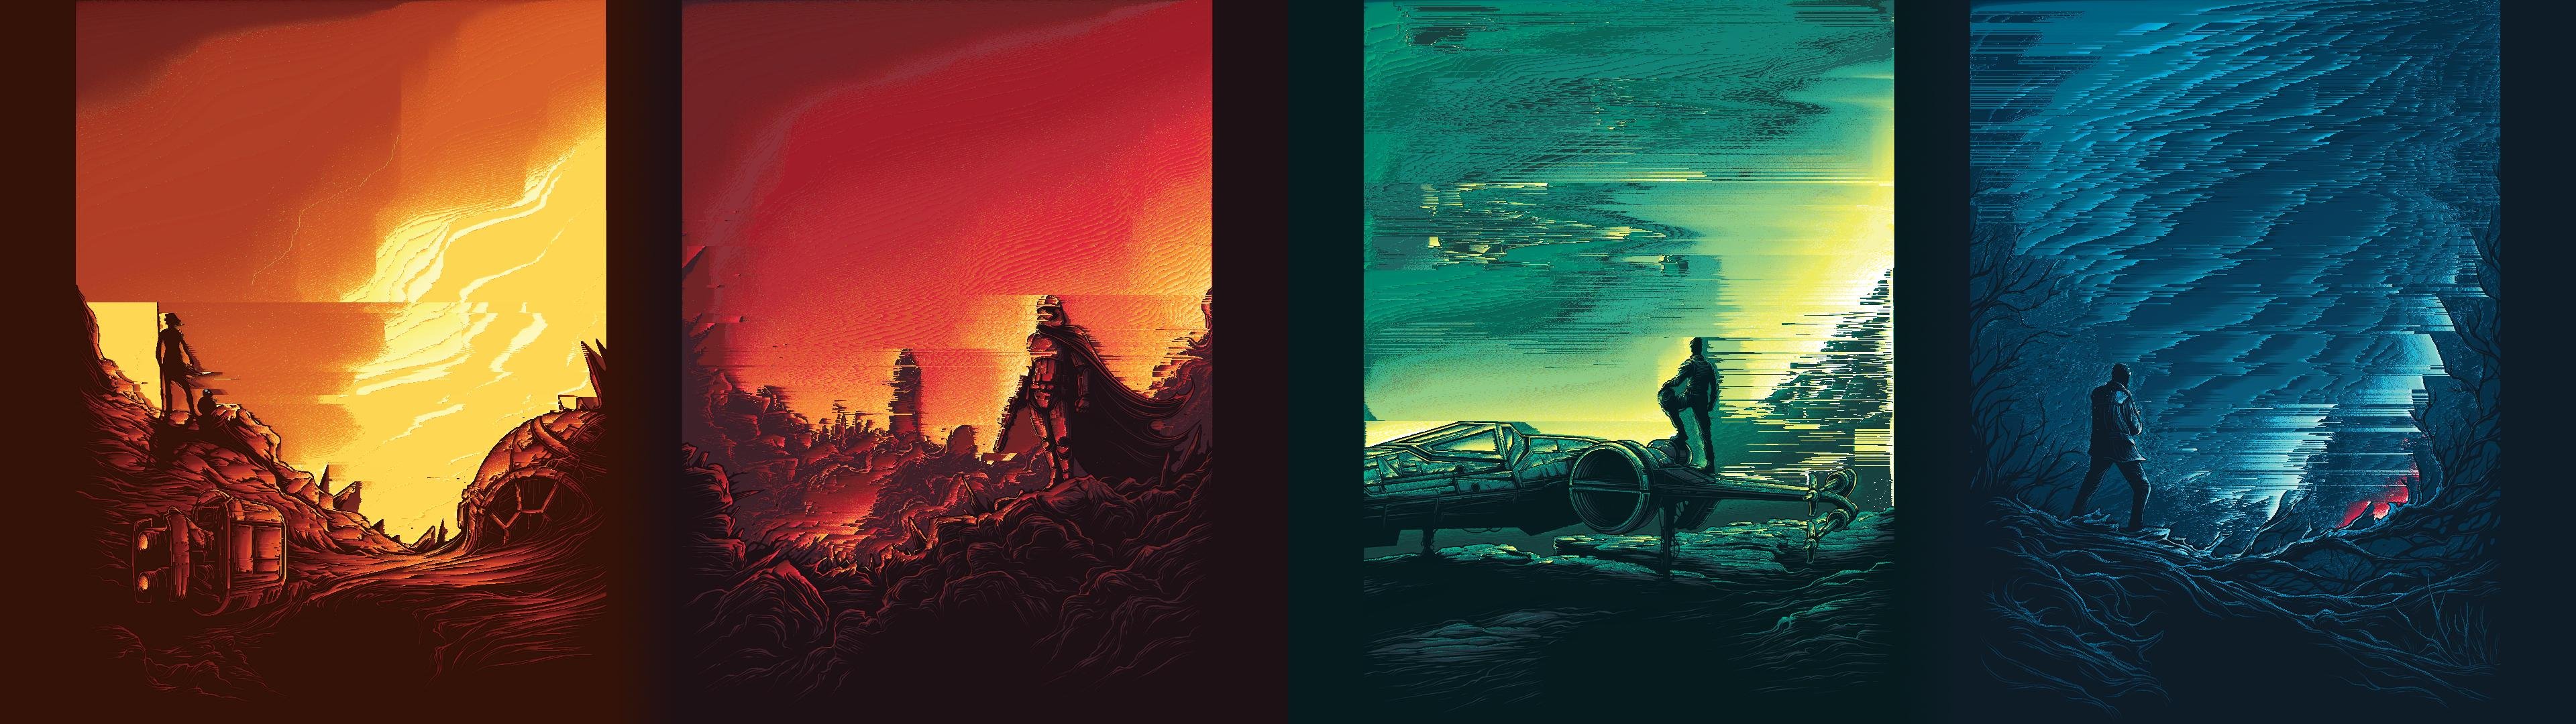 Star Wars: A Glitch Awakens 4K wallpaper